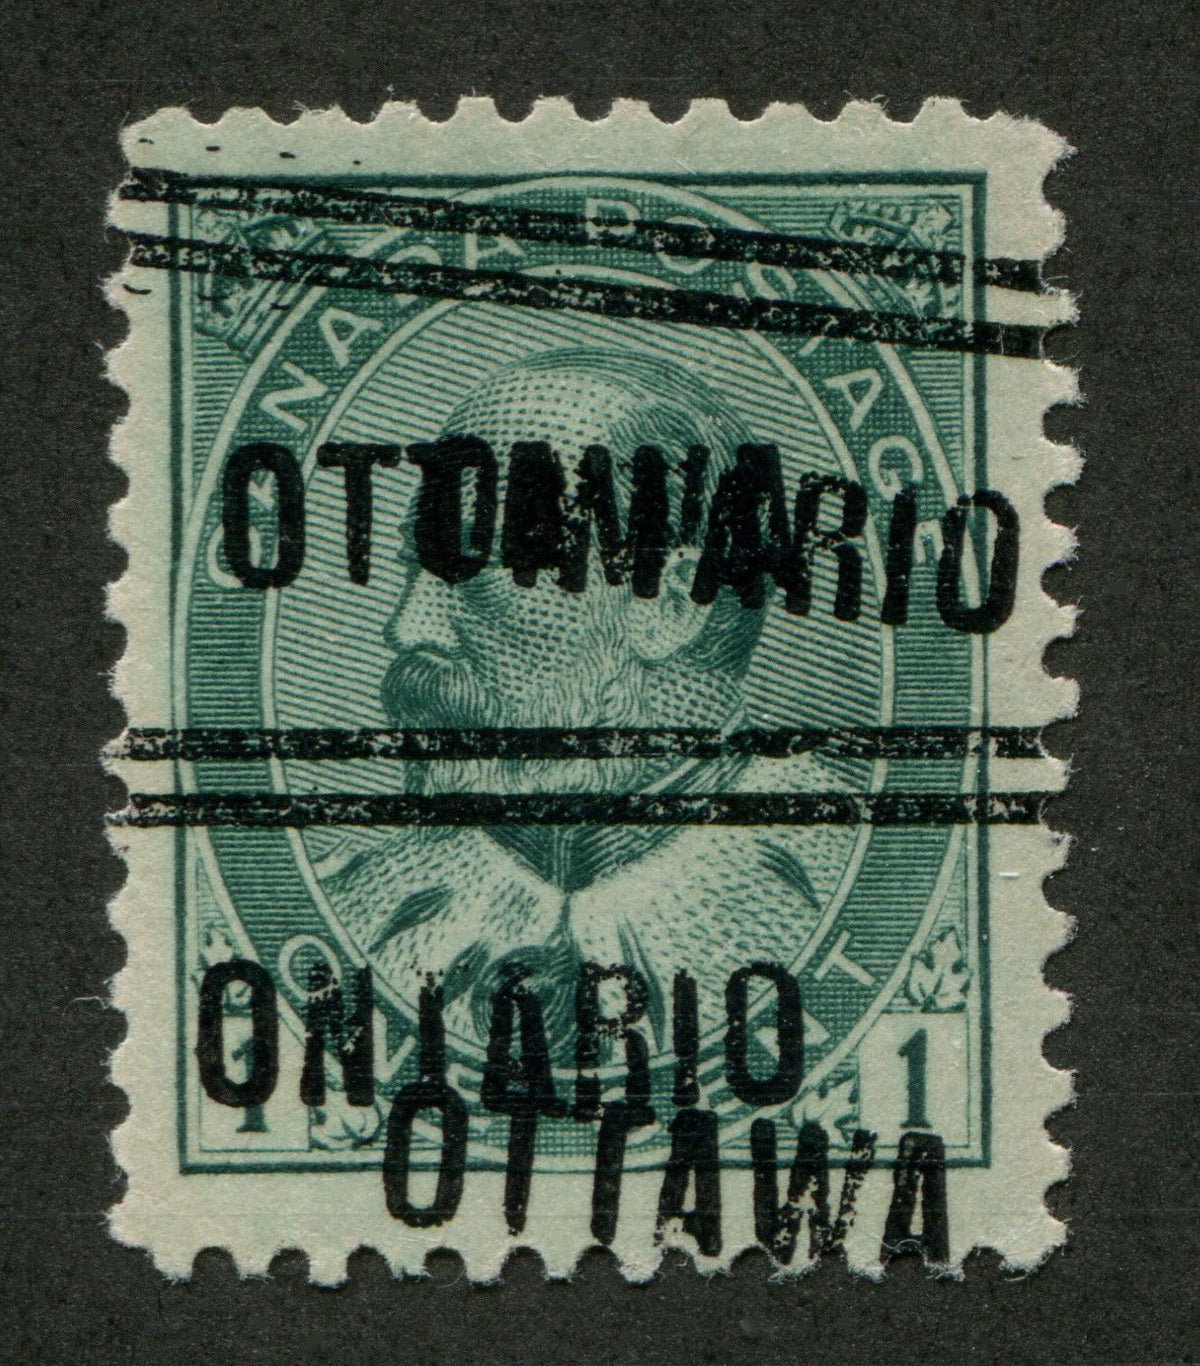 OTTA001089 - OTTAWA 1-89-D